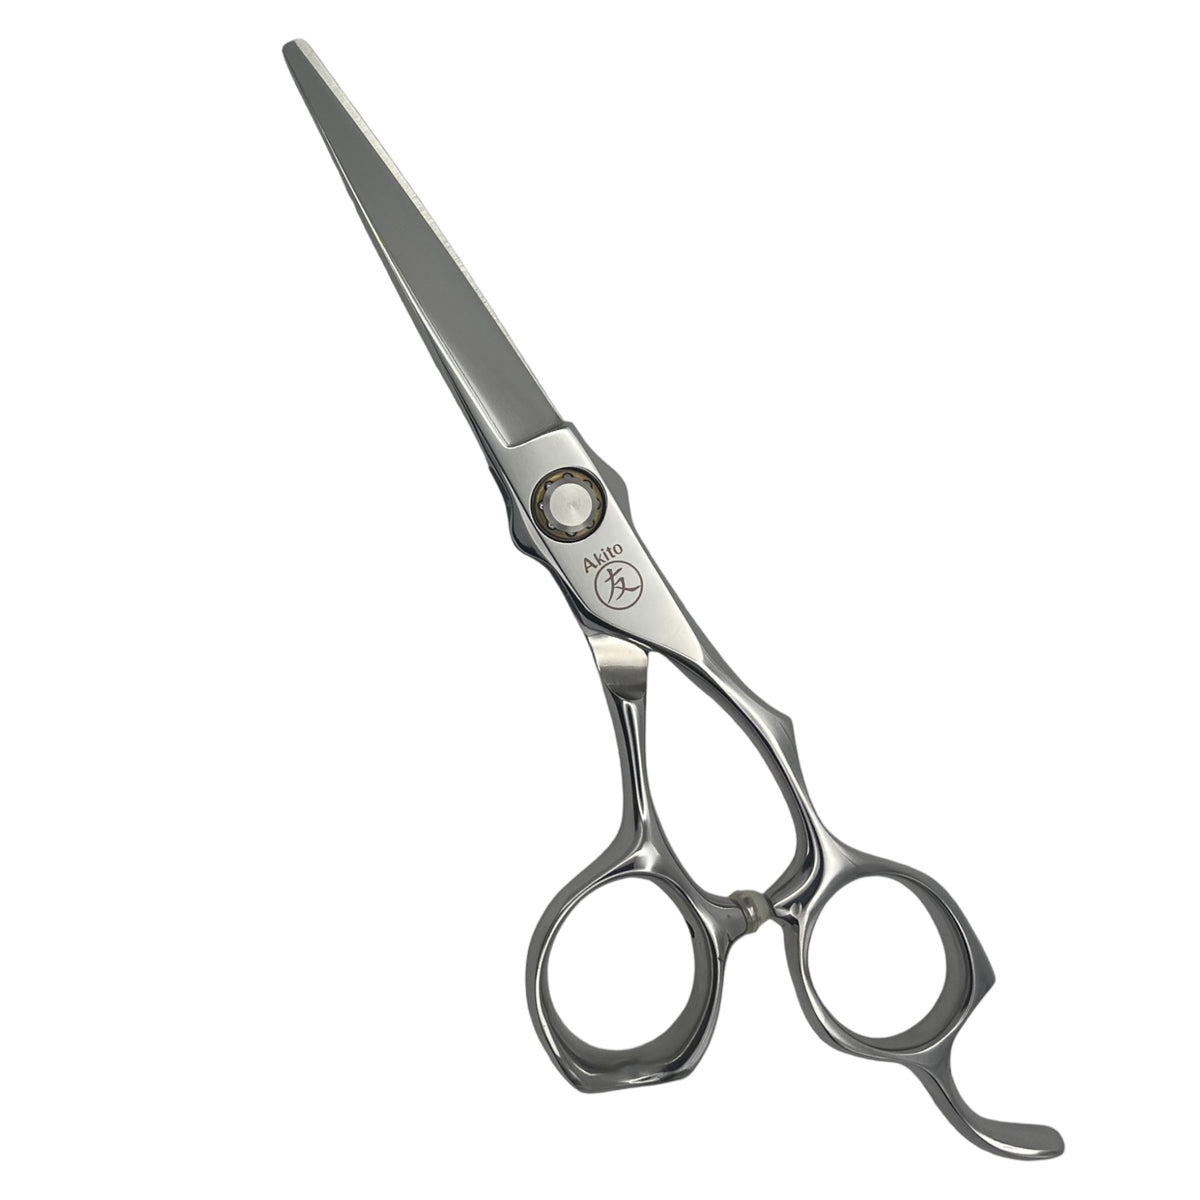 Kasai hair cutting scissors